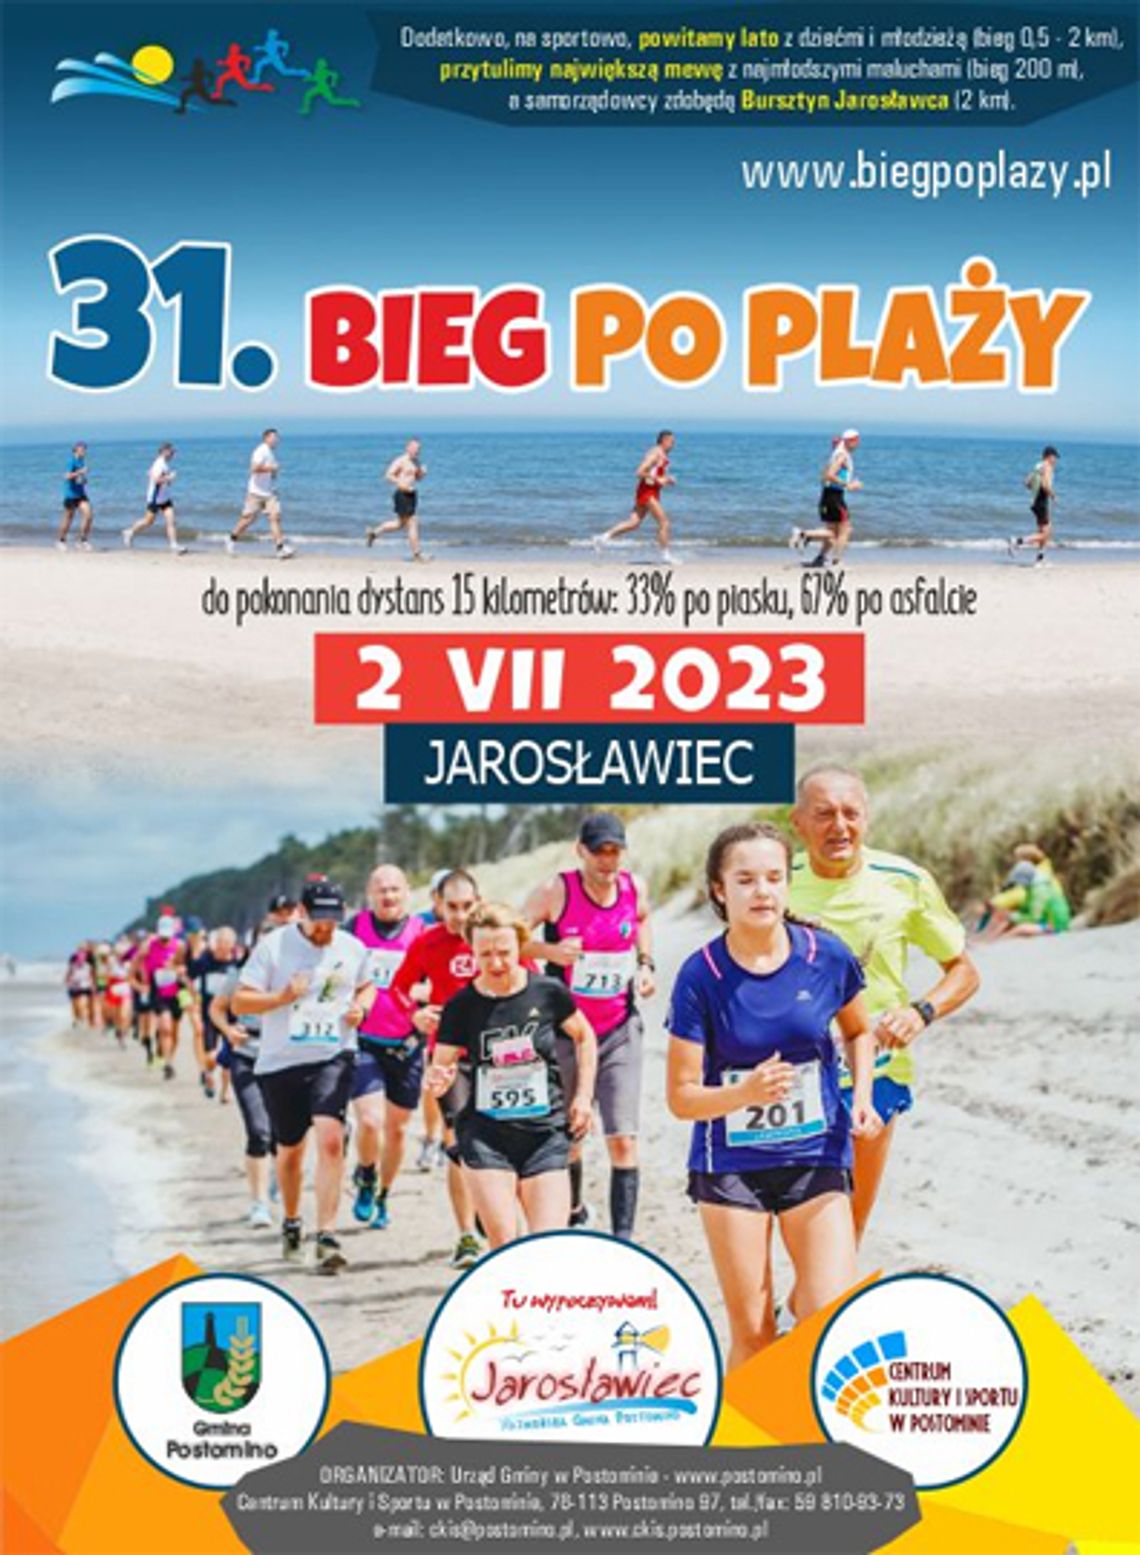 31. Międzynarodowym Biegu Po Plaży w Jarosławcu